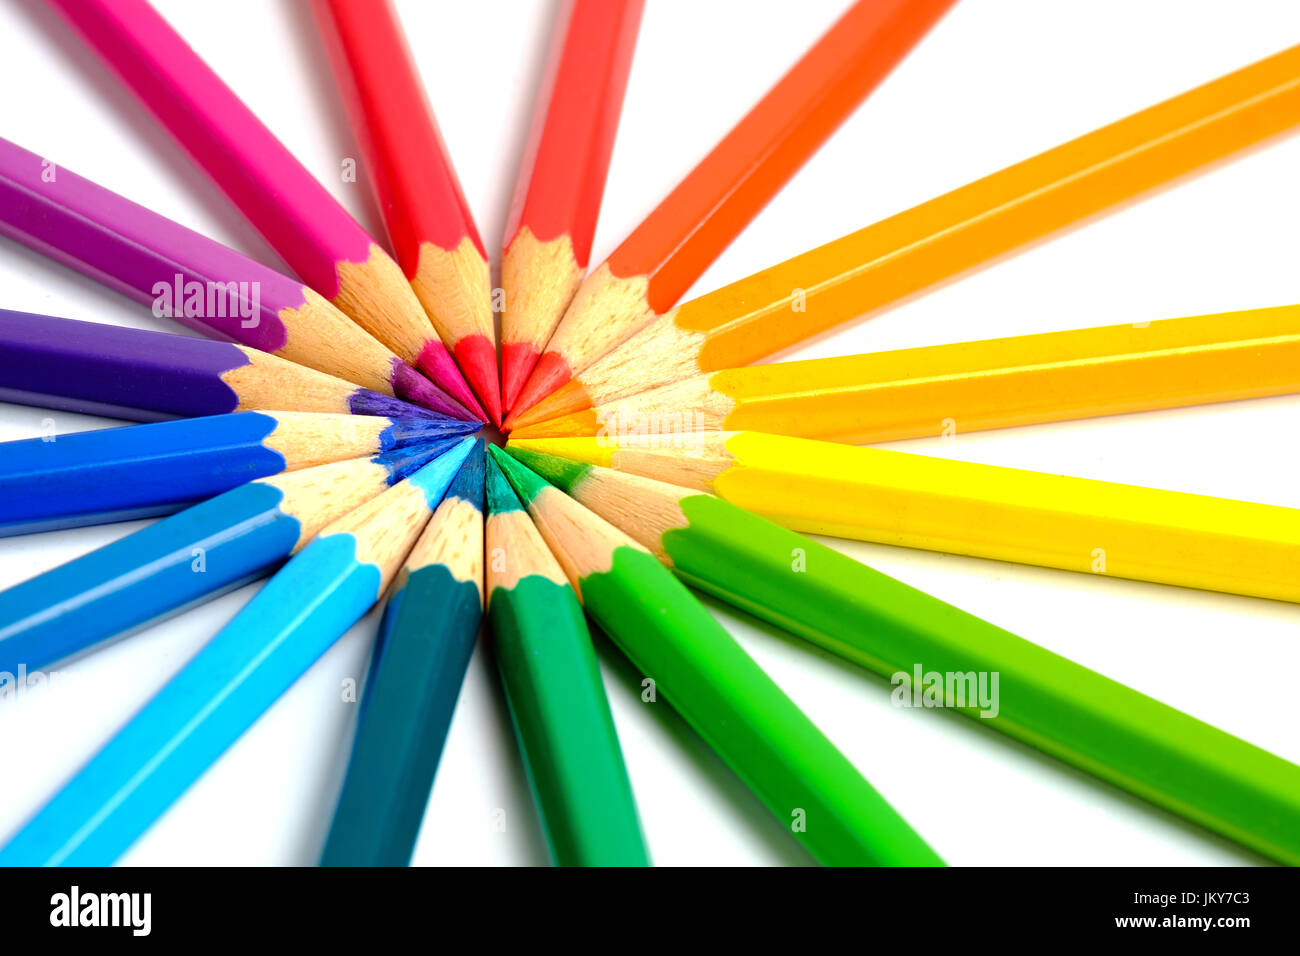 Circling coloring pencils Stock Photo